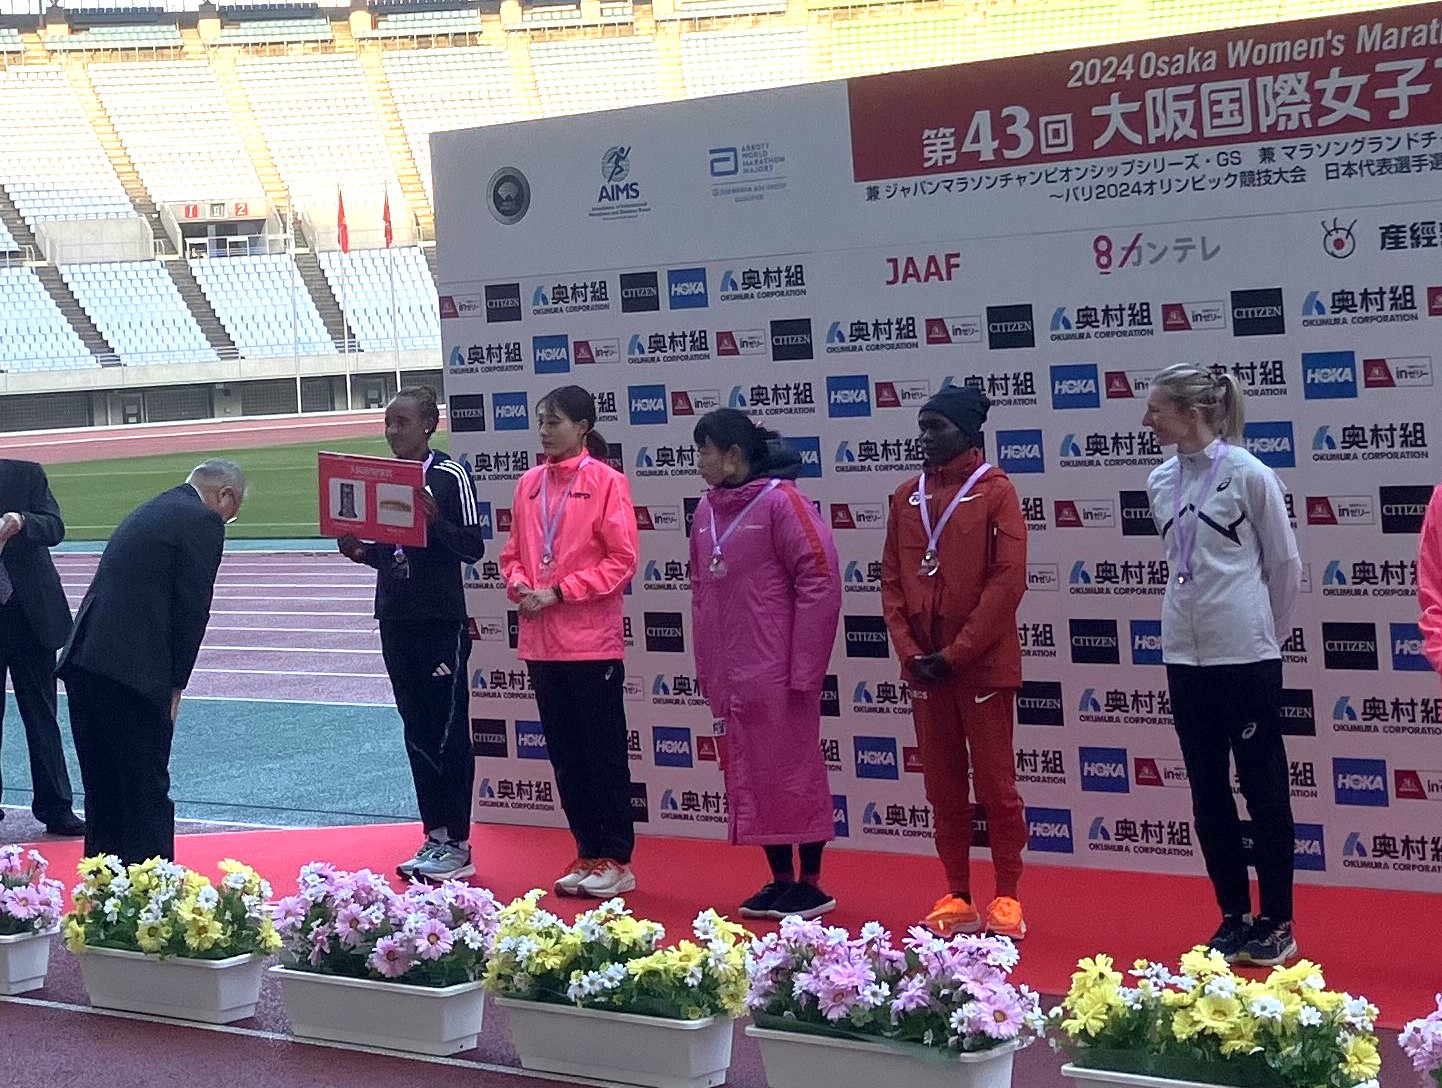 第43回大阪国際女子マラソン大会表彰式において大阪府知事賞を贈呈しました